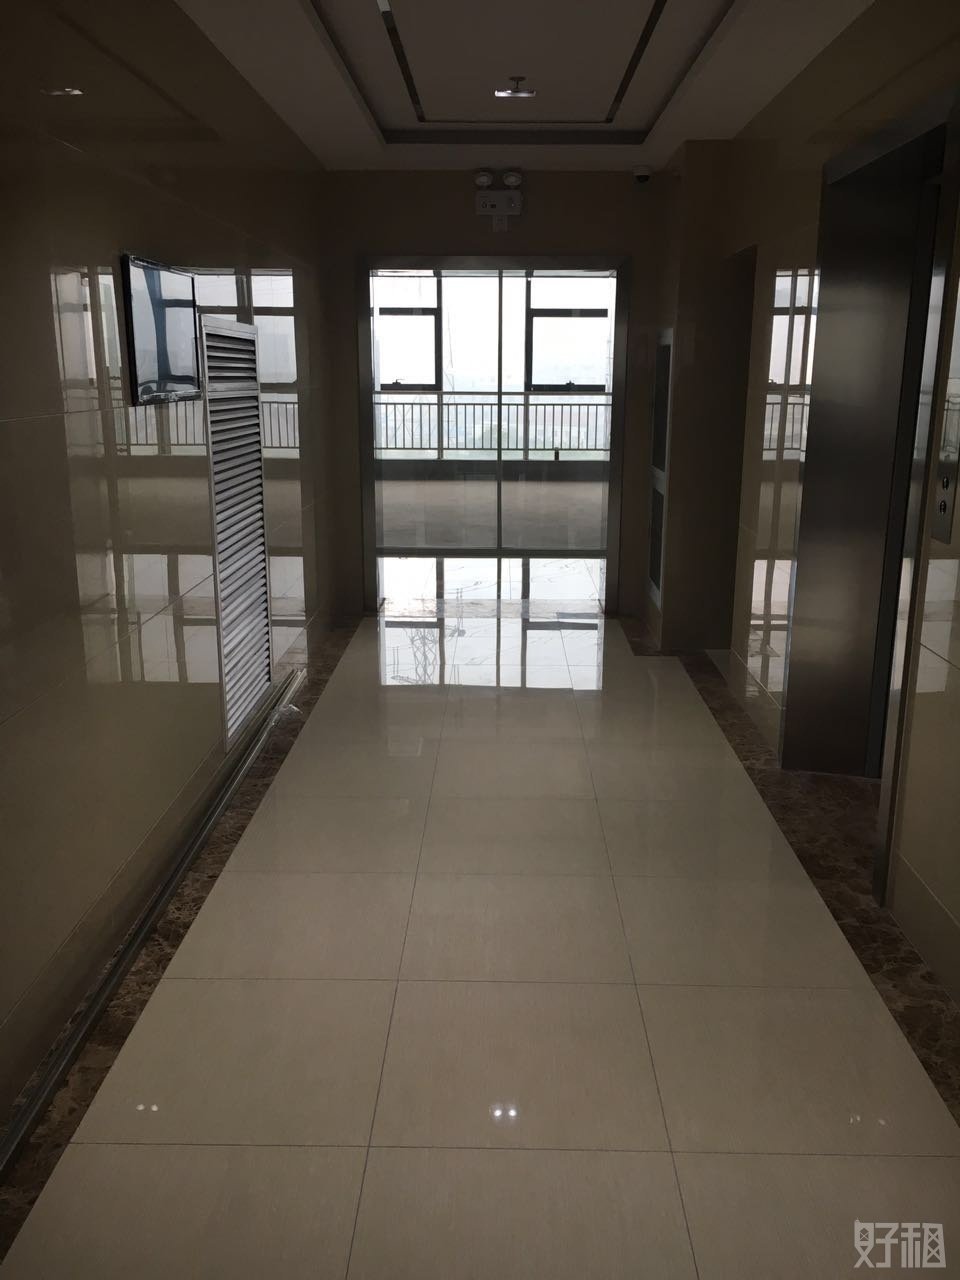 法姬娜大厦100平米办公室出租-租金价格1.32元/m²/天